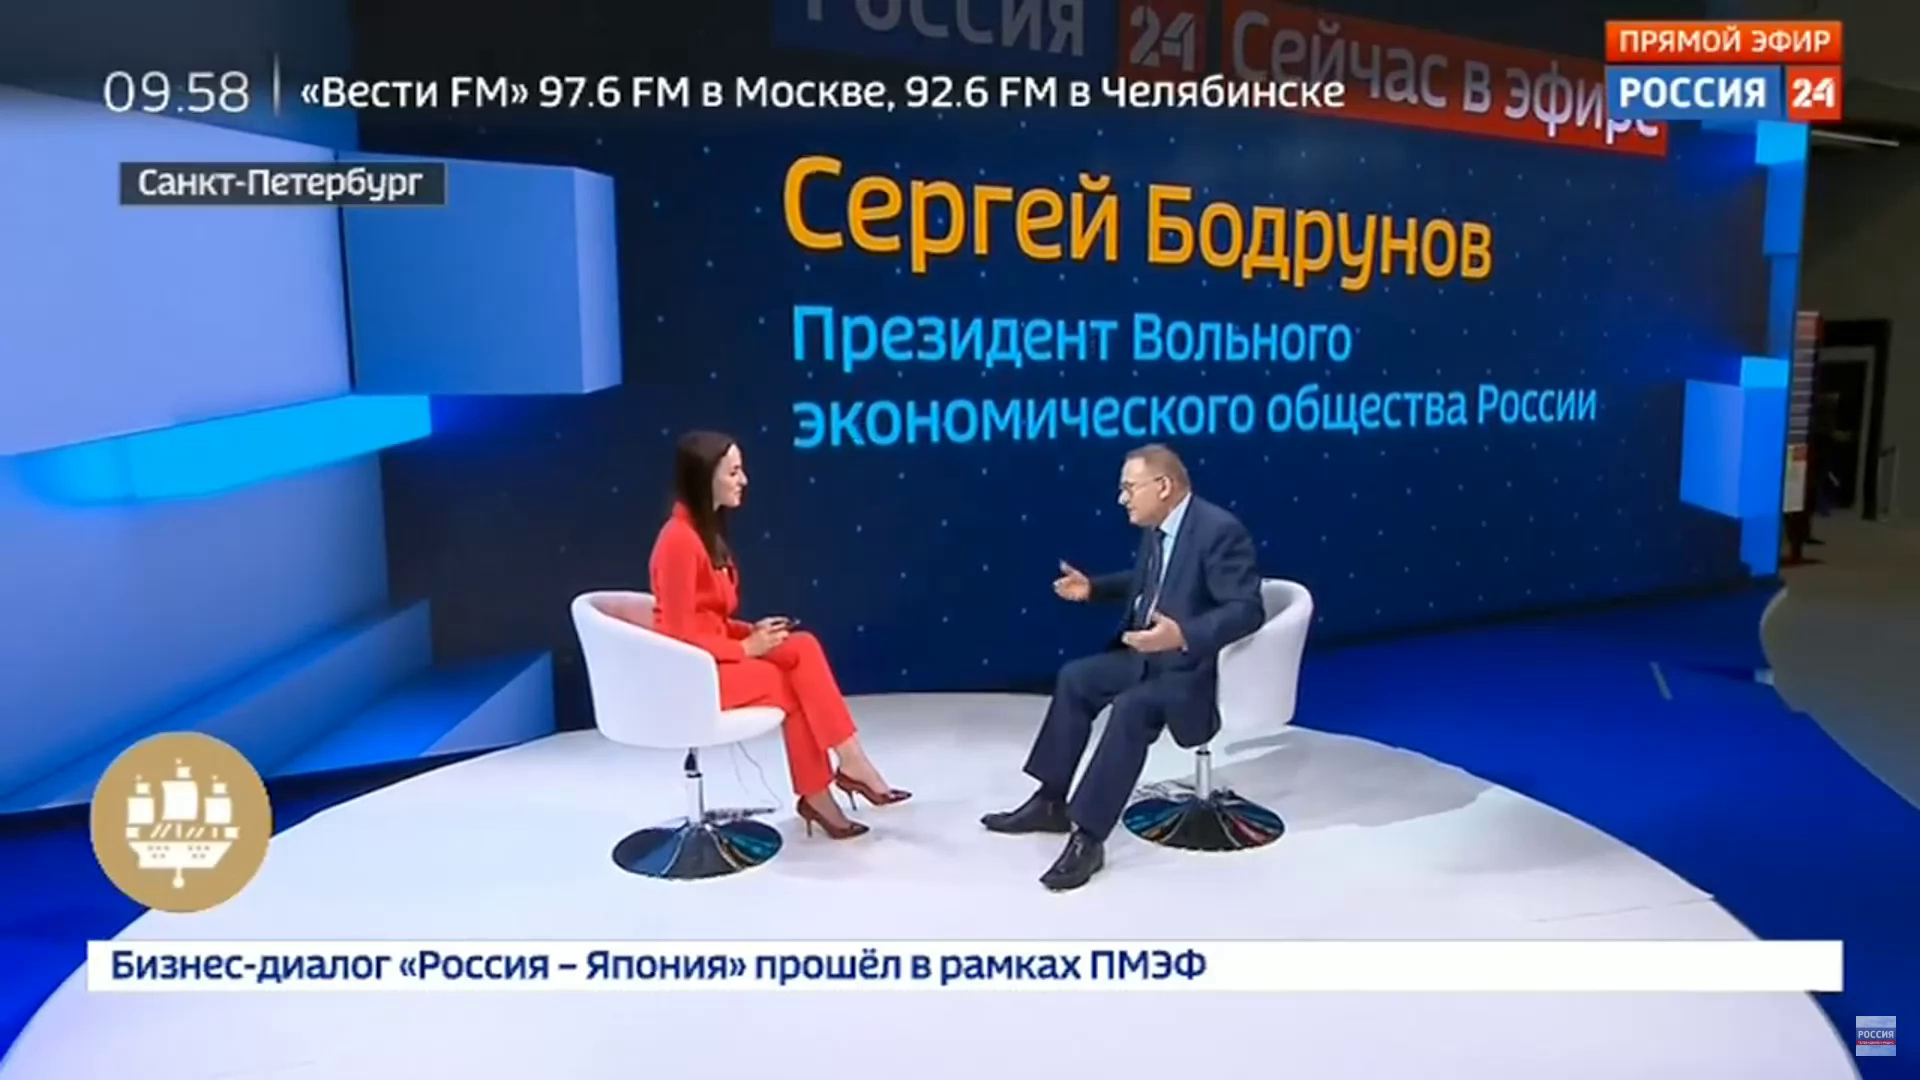 Сергей Бодрунов дал интервью в прямом эфире телеканала «Россия 24» на ПМЭФ-2018